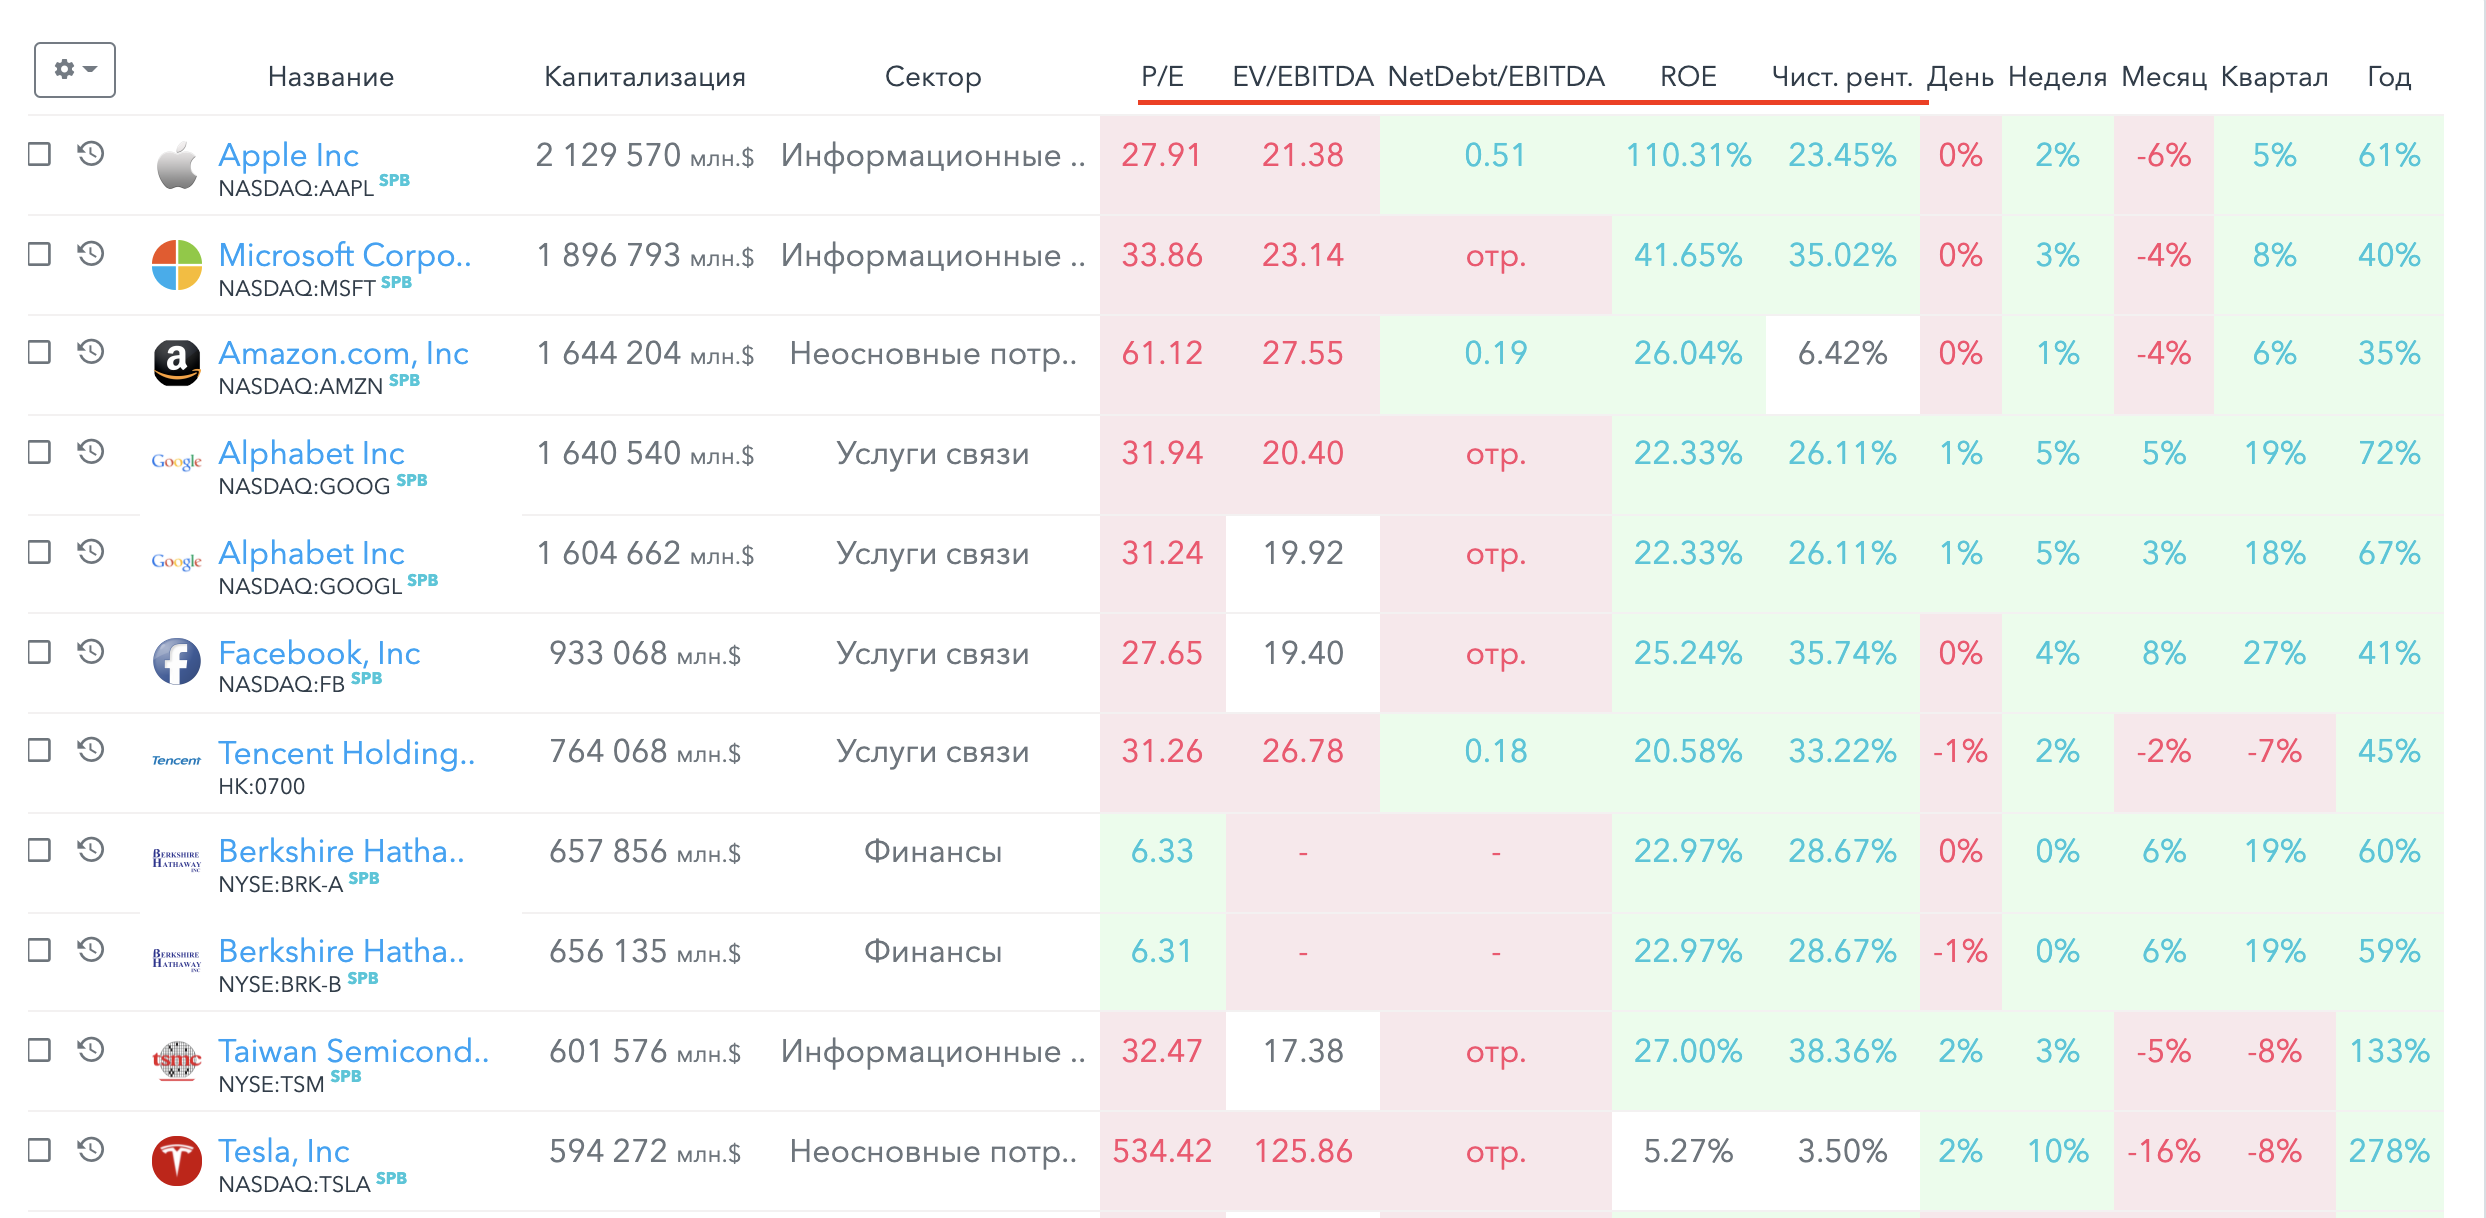 Топ 5 мультипликаторов в поиске на FinanceMarker.ru